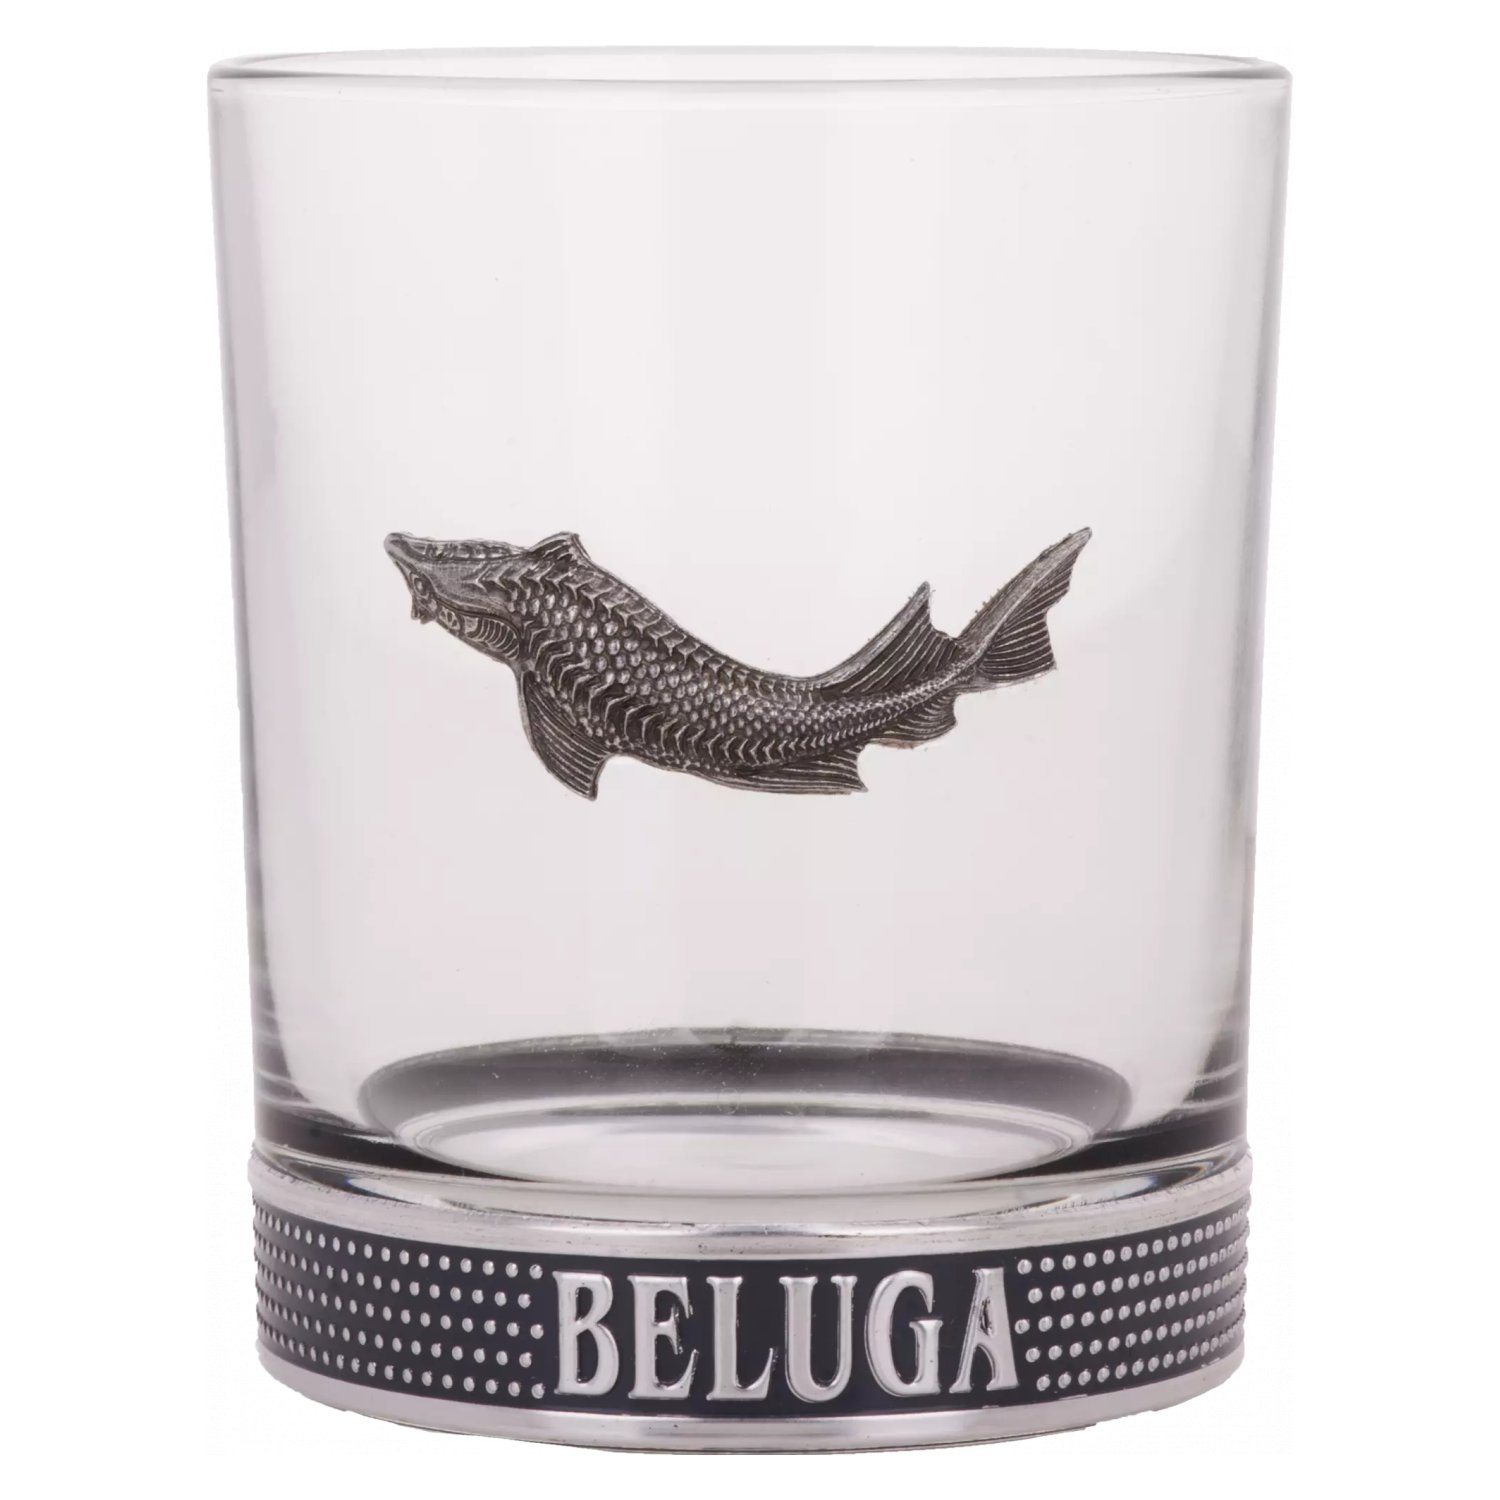 Beluga Vodka LONGDRINK Glasses Set of 2 Exclusive BAR Glasses